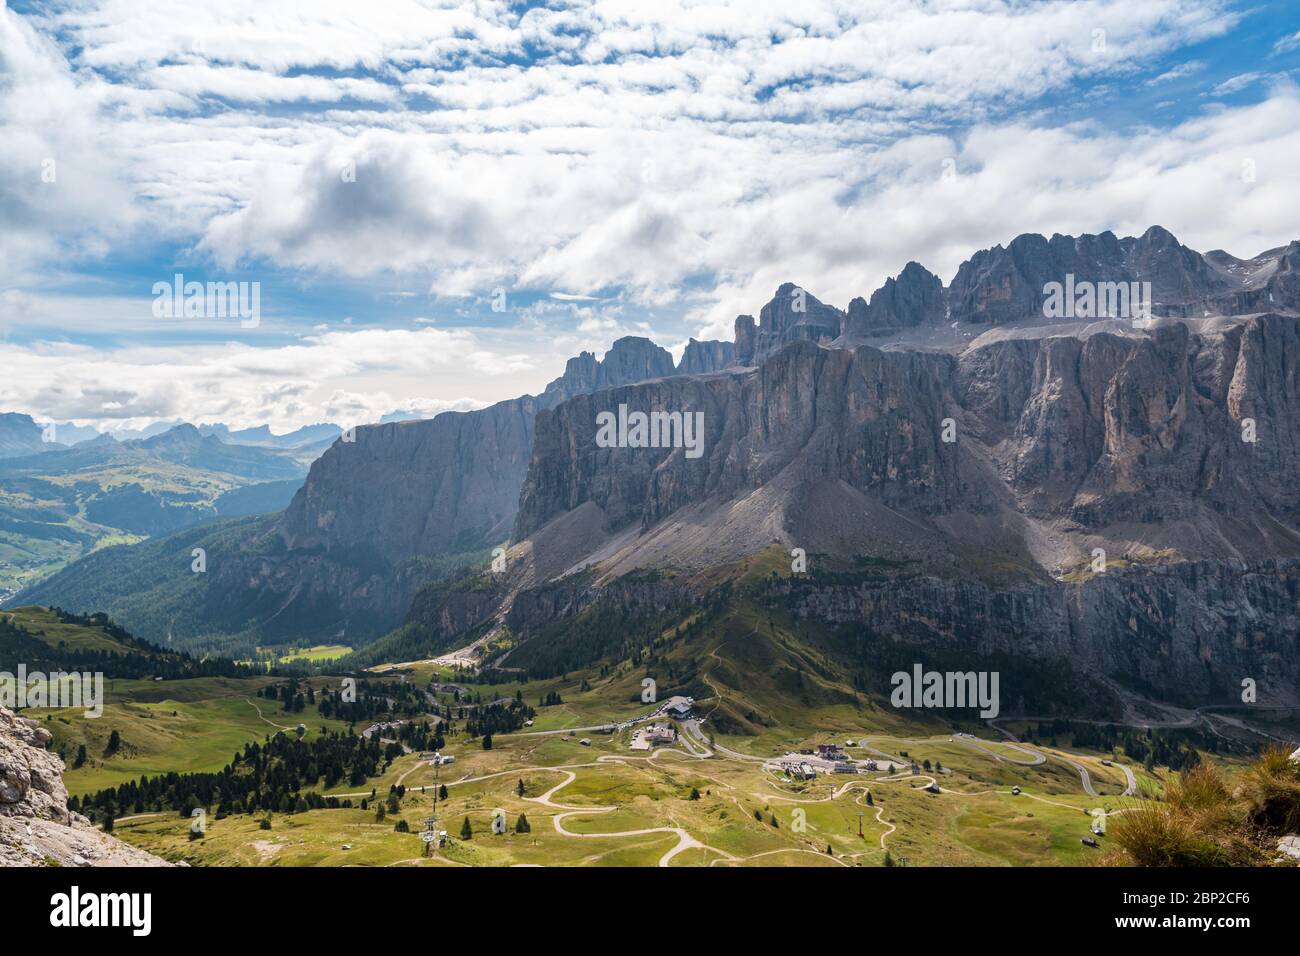 Blick vom Cir zum Sellamassiv. Ein beliebtes Naturschutzgebiet für Wanderer und Kletterer im Sommer. Stockfoto